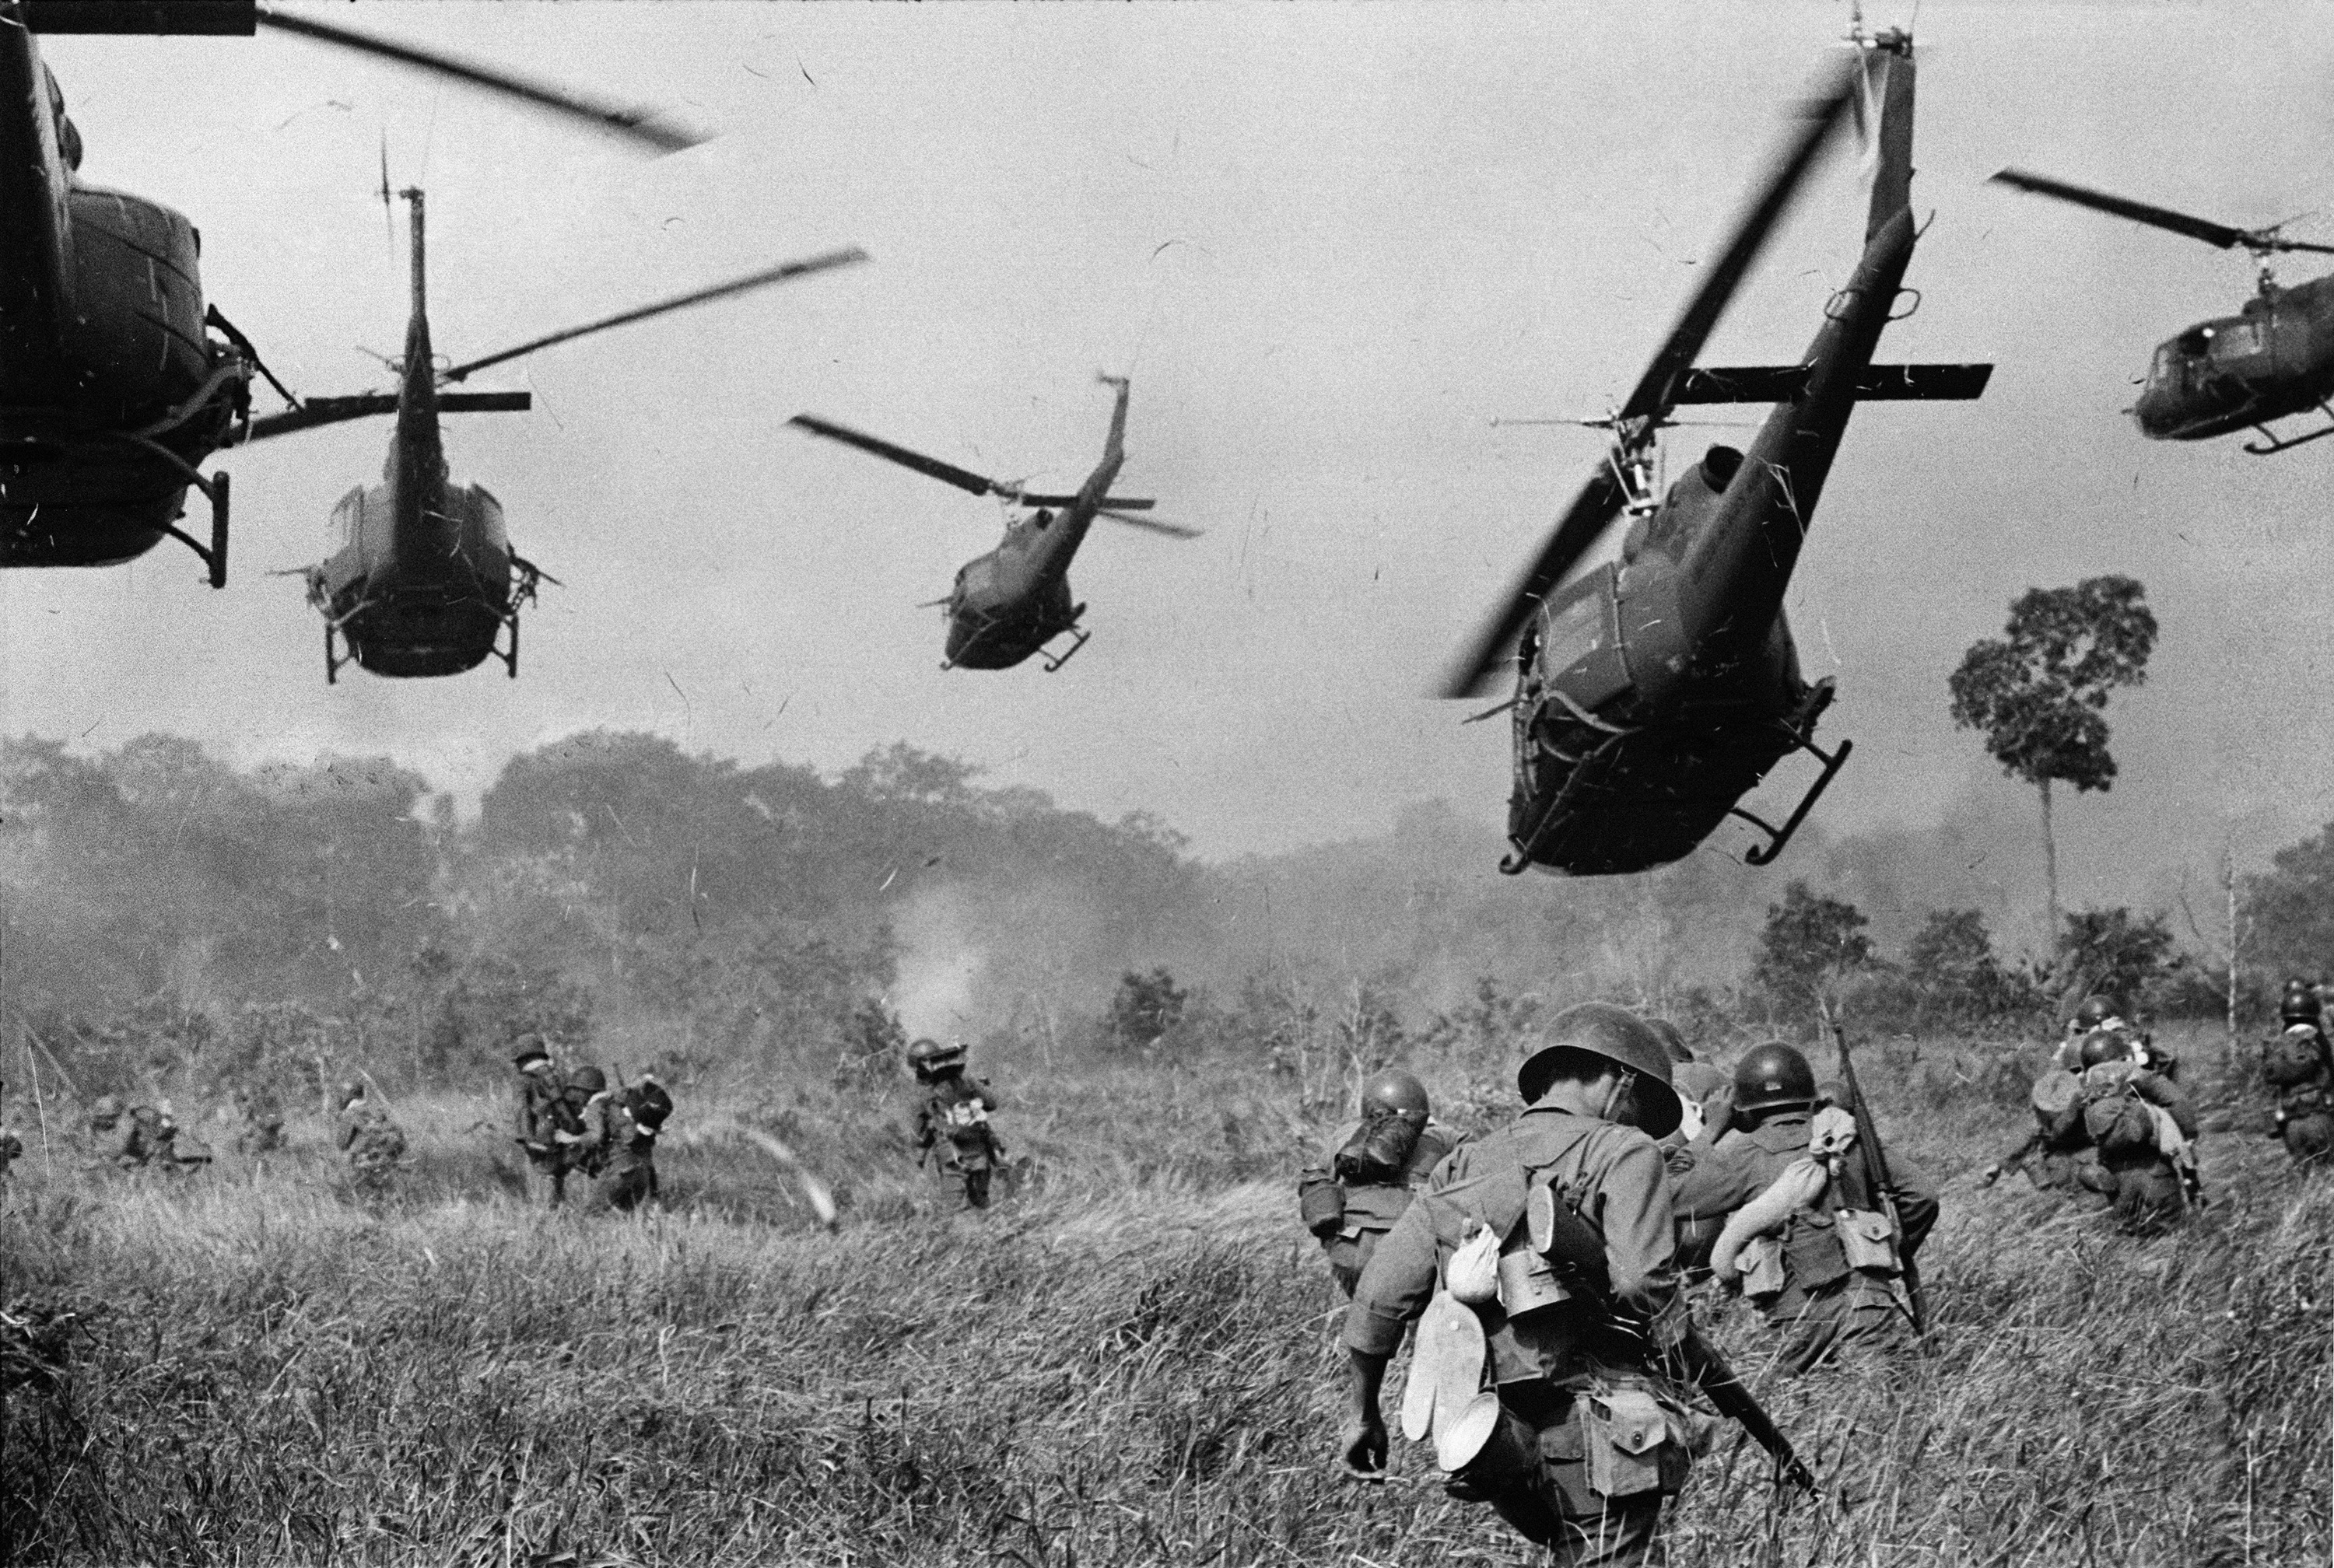 Скачать обои Вьетнамская Война на телефон бесплатно